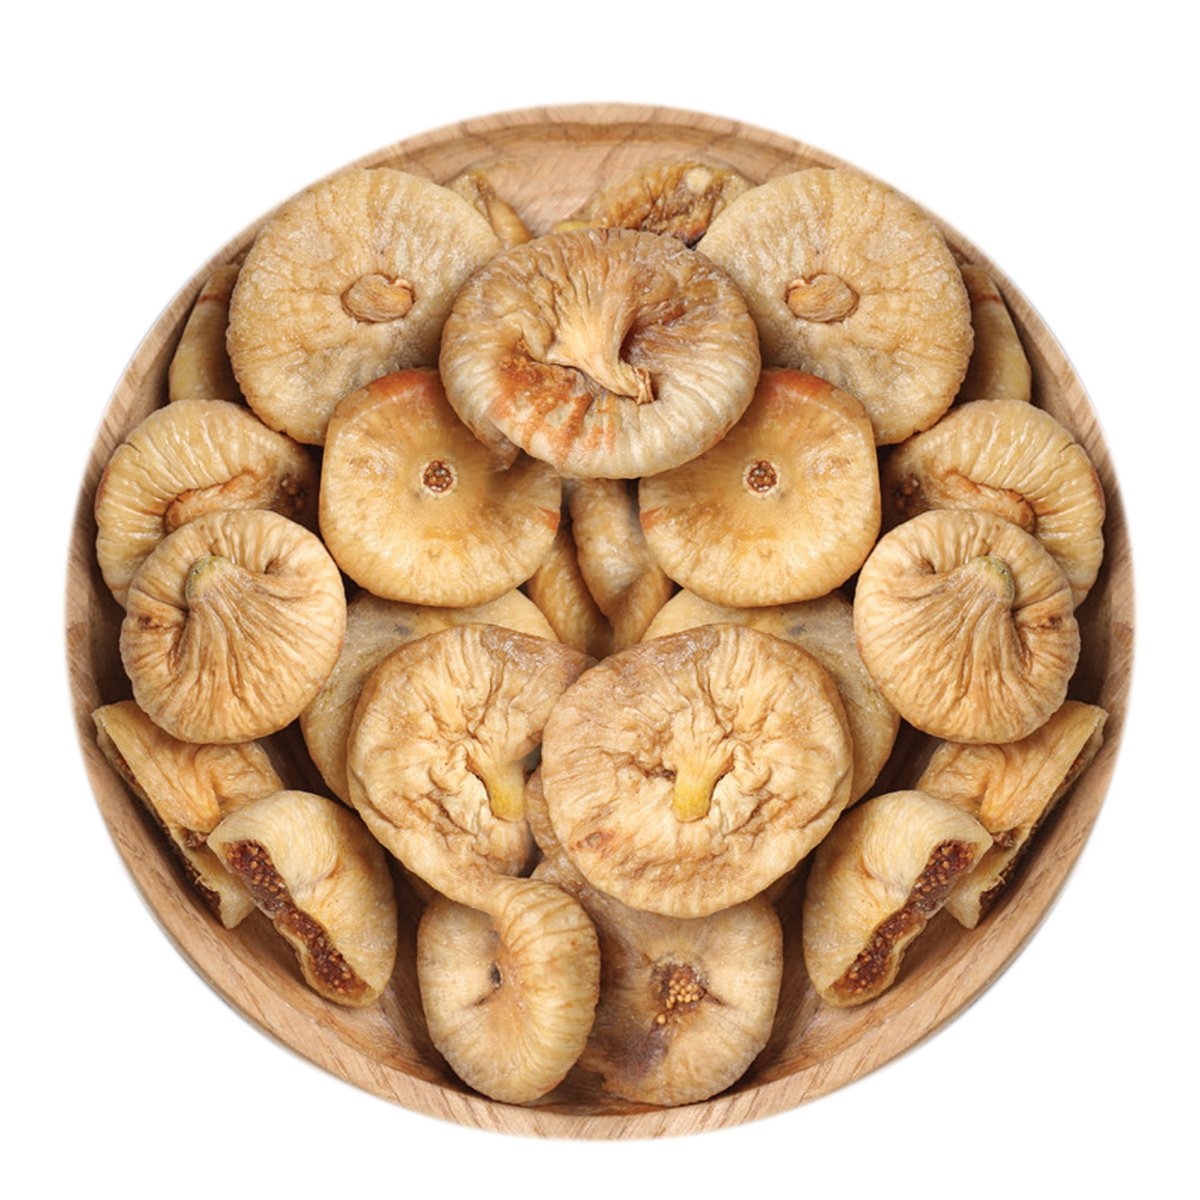 اشتري قم بشراء تين تركي مجفف 500 جم Online at Best Price من الموقع - من لولو هايبر ماركت Roastery Dried Fruit في السعودية